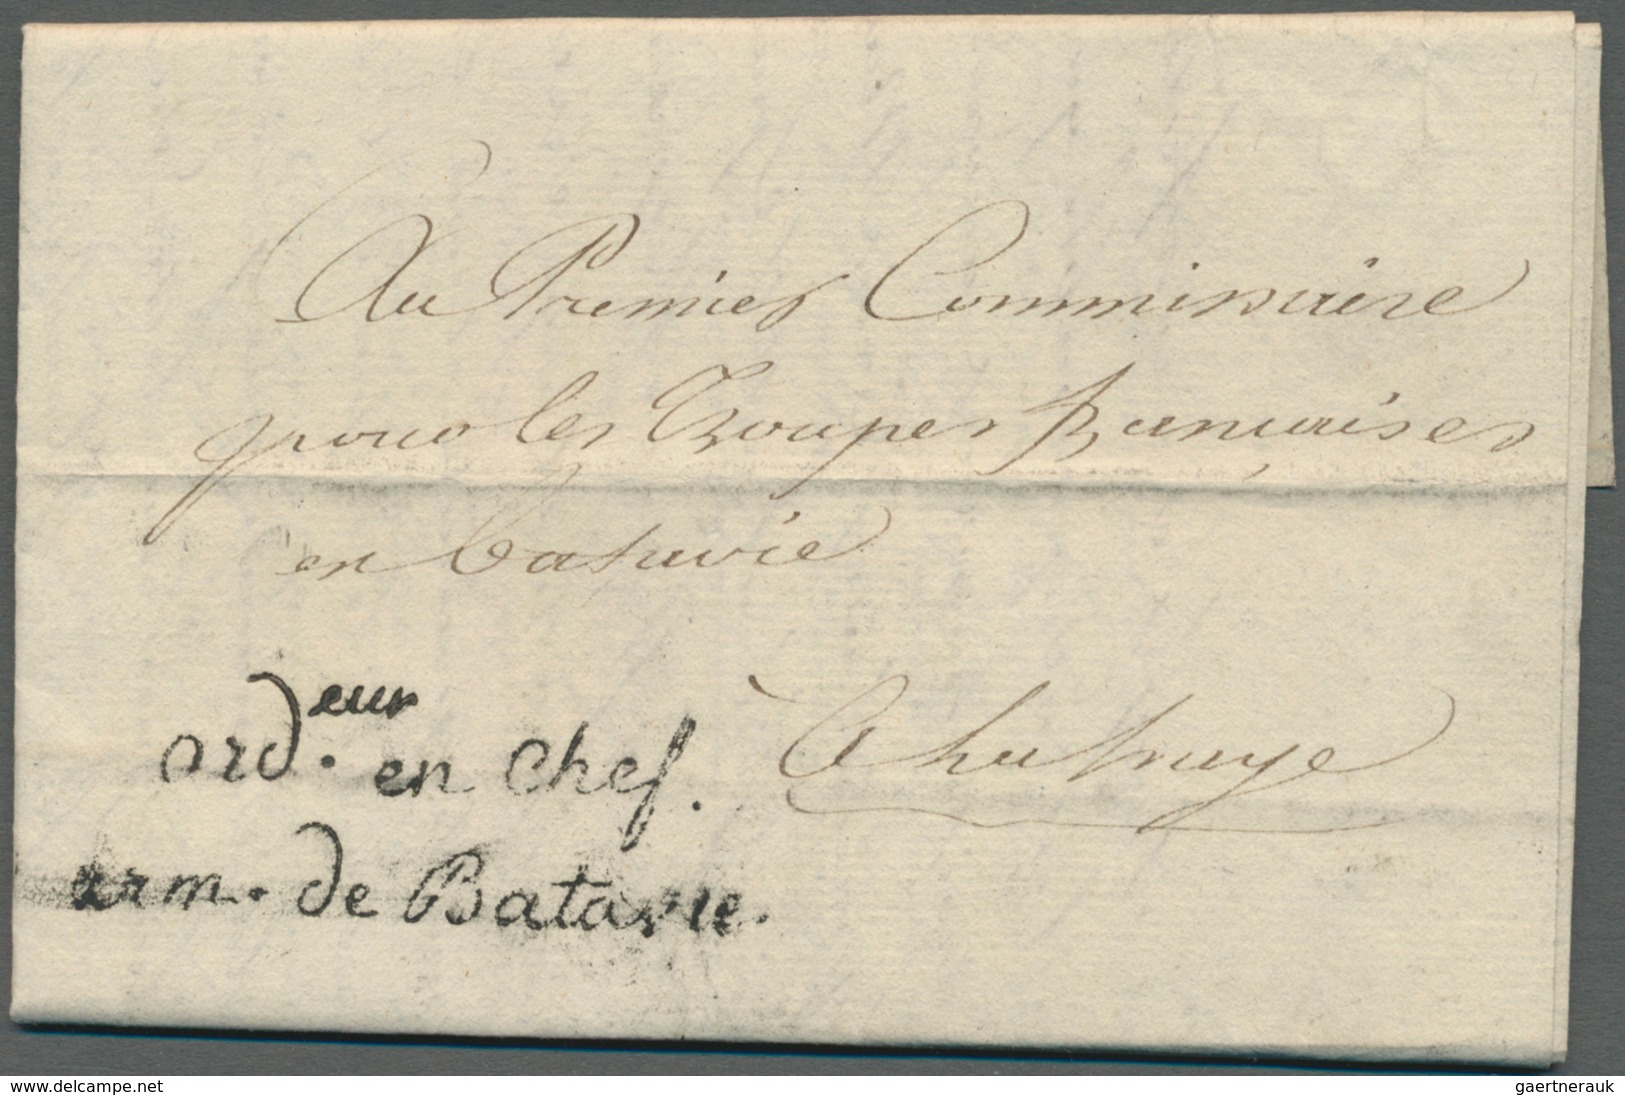 Europa - West: 1893/1813, interessante Sammlung "Französische Armeepost" in Europa mit ca. 70 Briefe